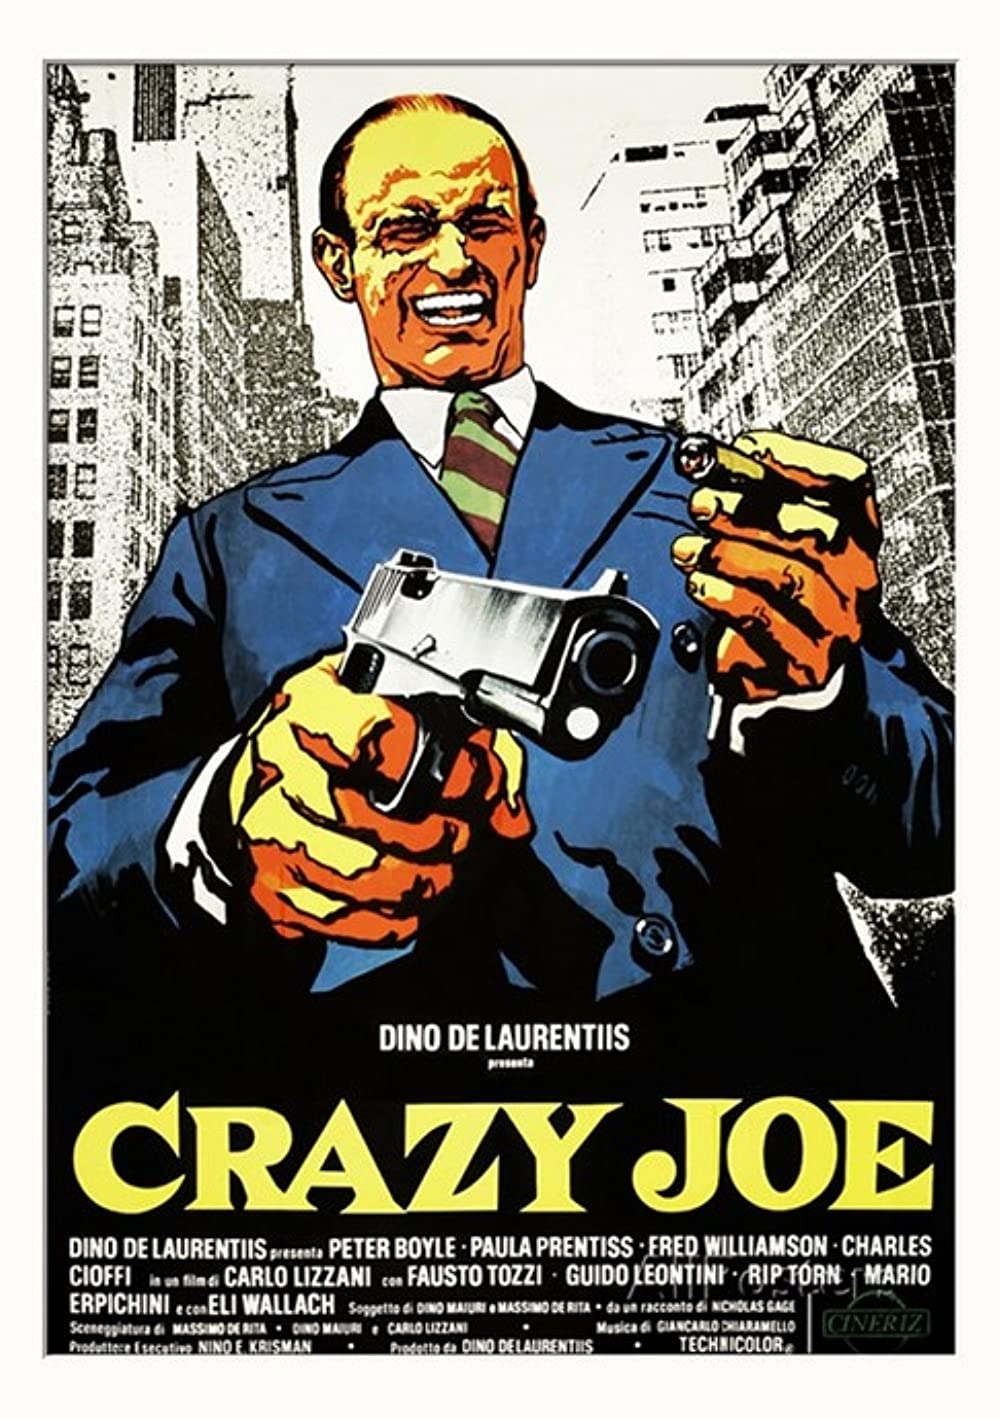 Filmbeschreibung zu Crazy Joe